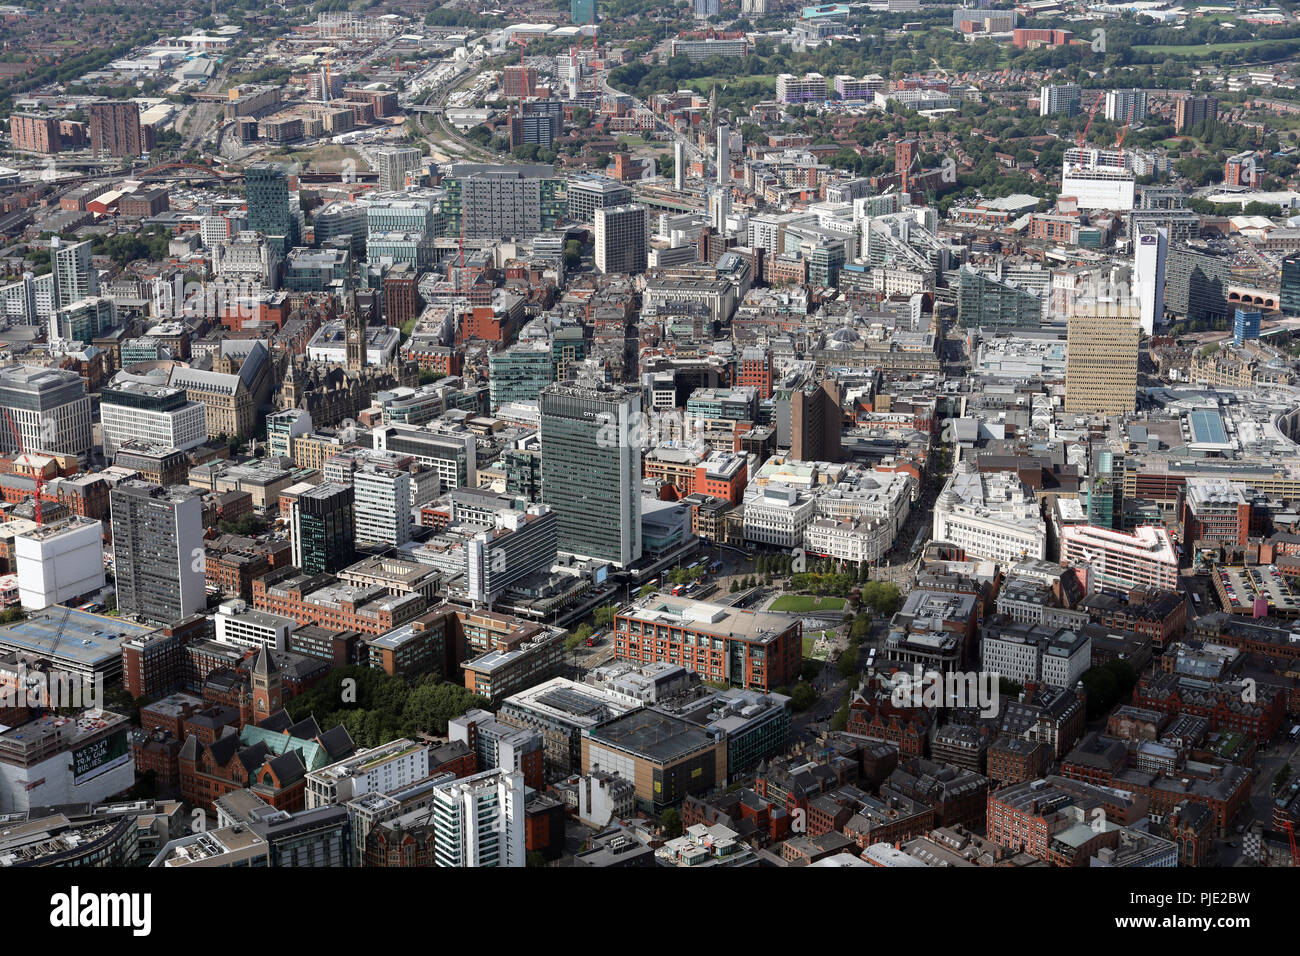 Vista aérea a través de Piccadilly Gardens en el centro de la ciudad de Manchester, con la Torre de la ciudad prominente edificio de oficinas Foto de stock